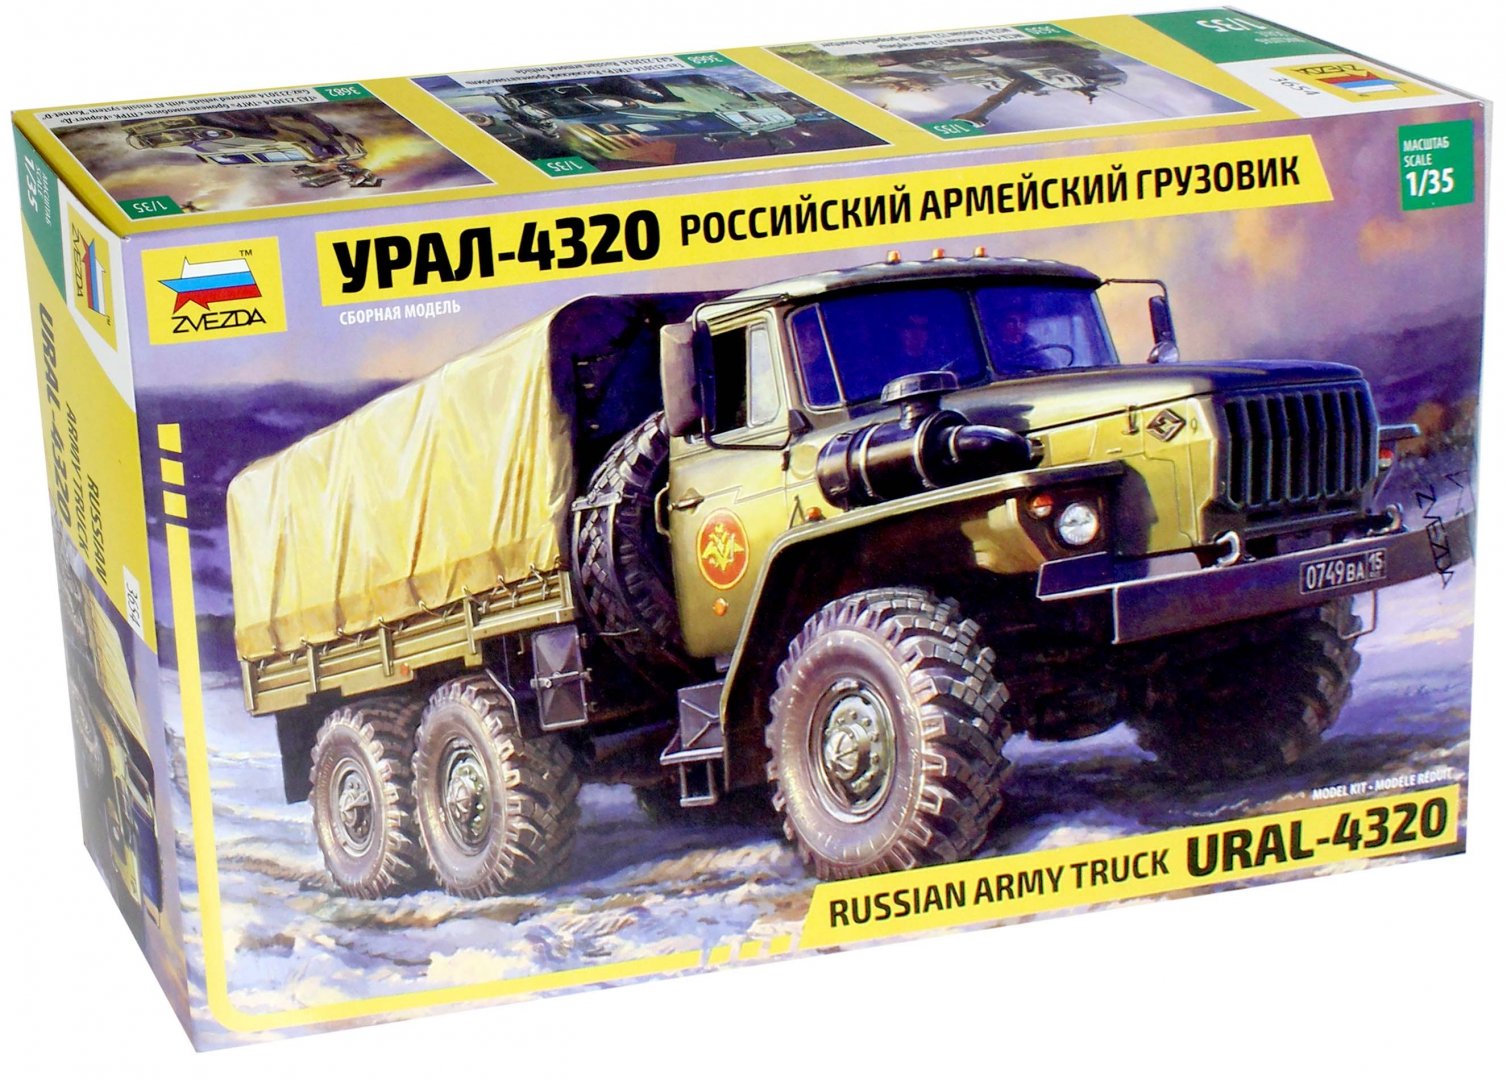 Иллюстрация 1 из 7 для Российский армейский грузовик Урал-4320 (1/35) (3654) | Лабиринт - игрушки. Источник: Лабиринт